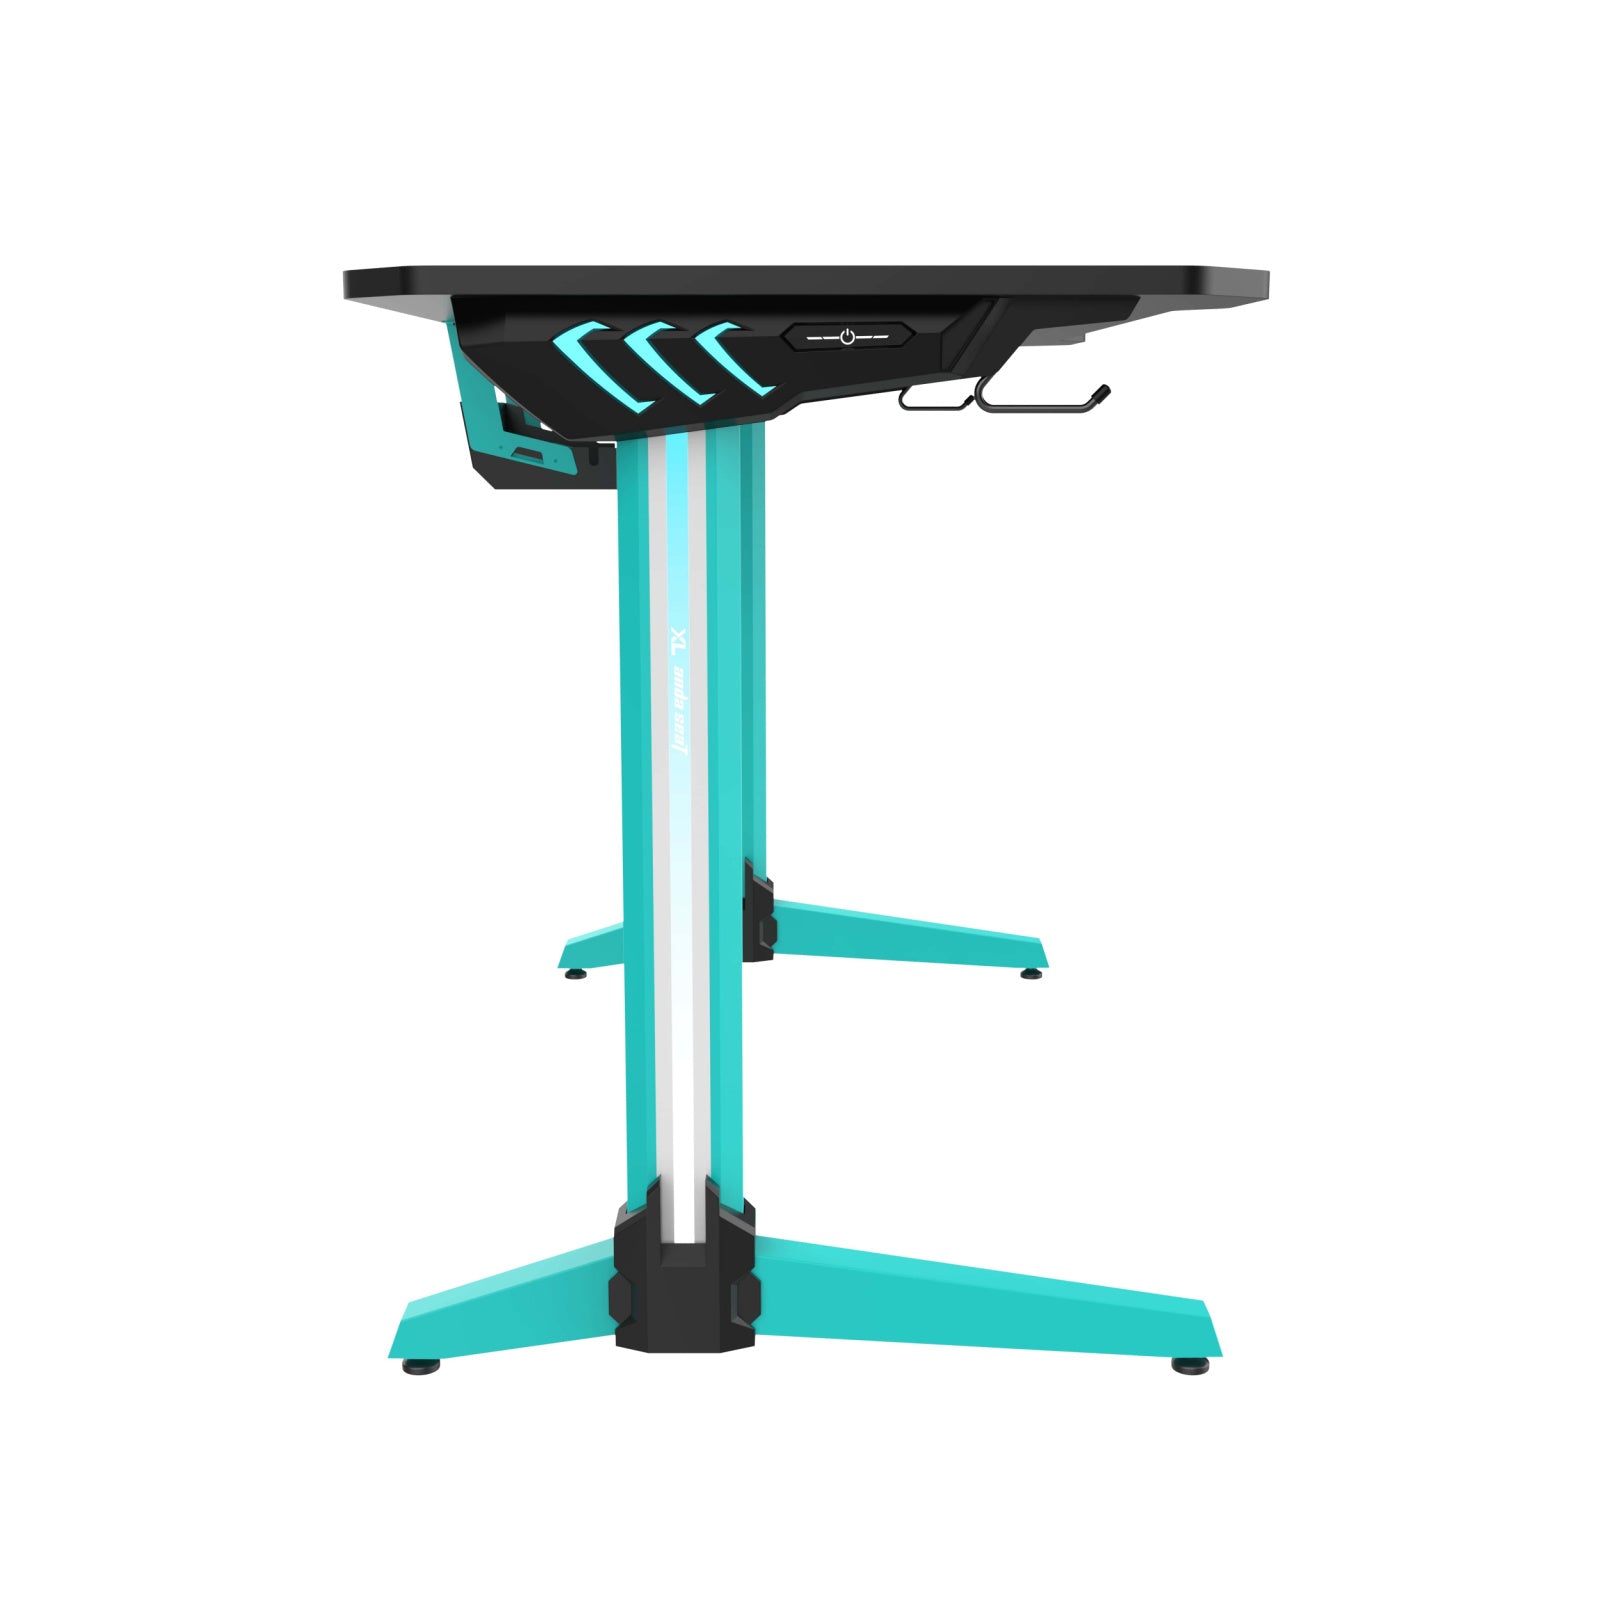 Anda Seat Excel Edition Desk Gaming Desk